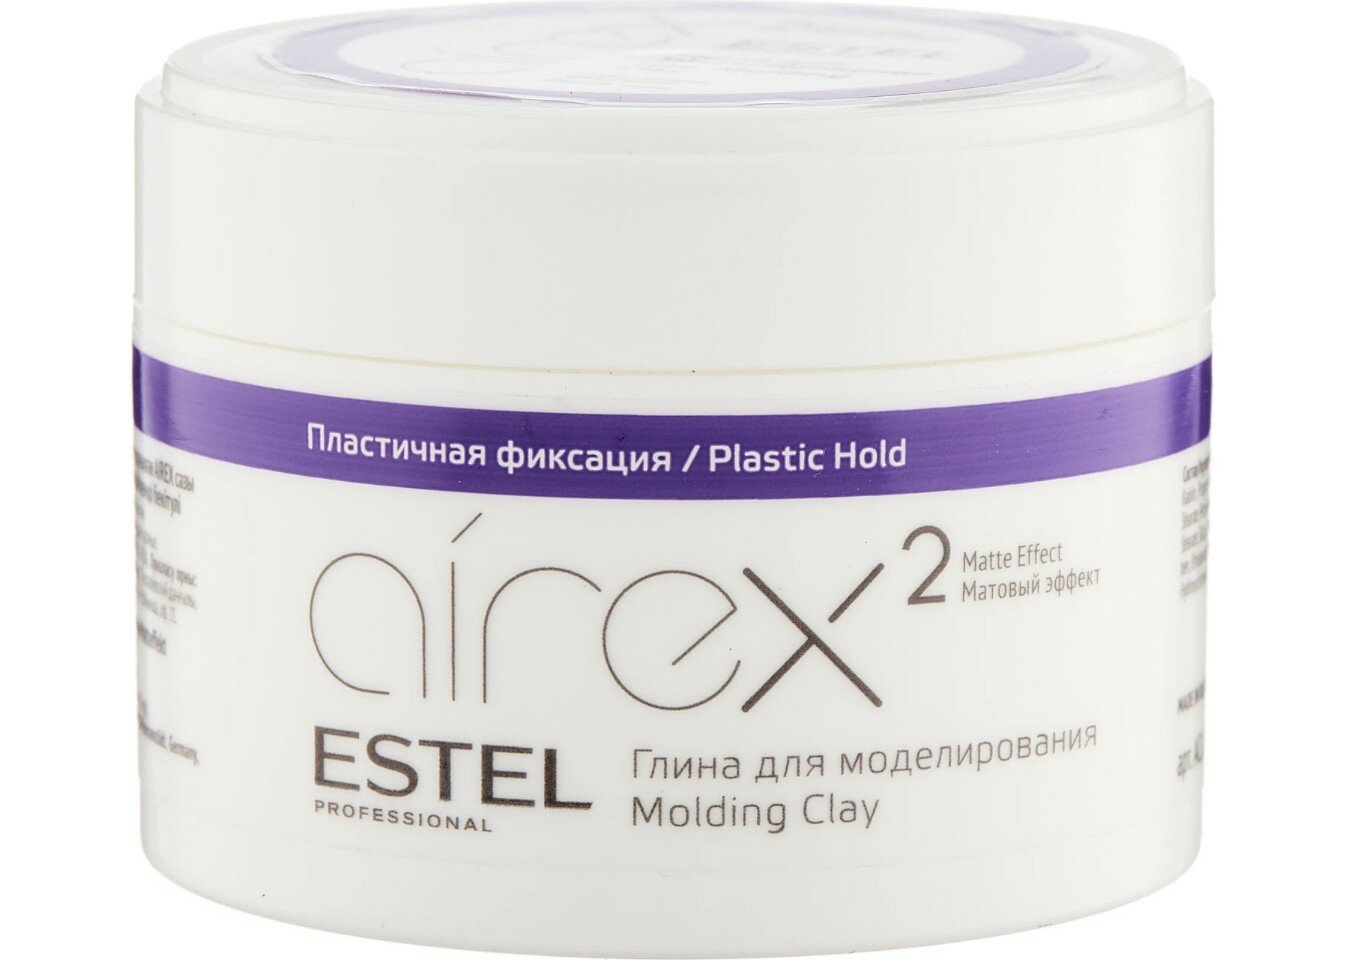 Глина для моделирования волос с матовым эффектом Пластичная фиксация AIREX (65 мл)